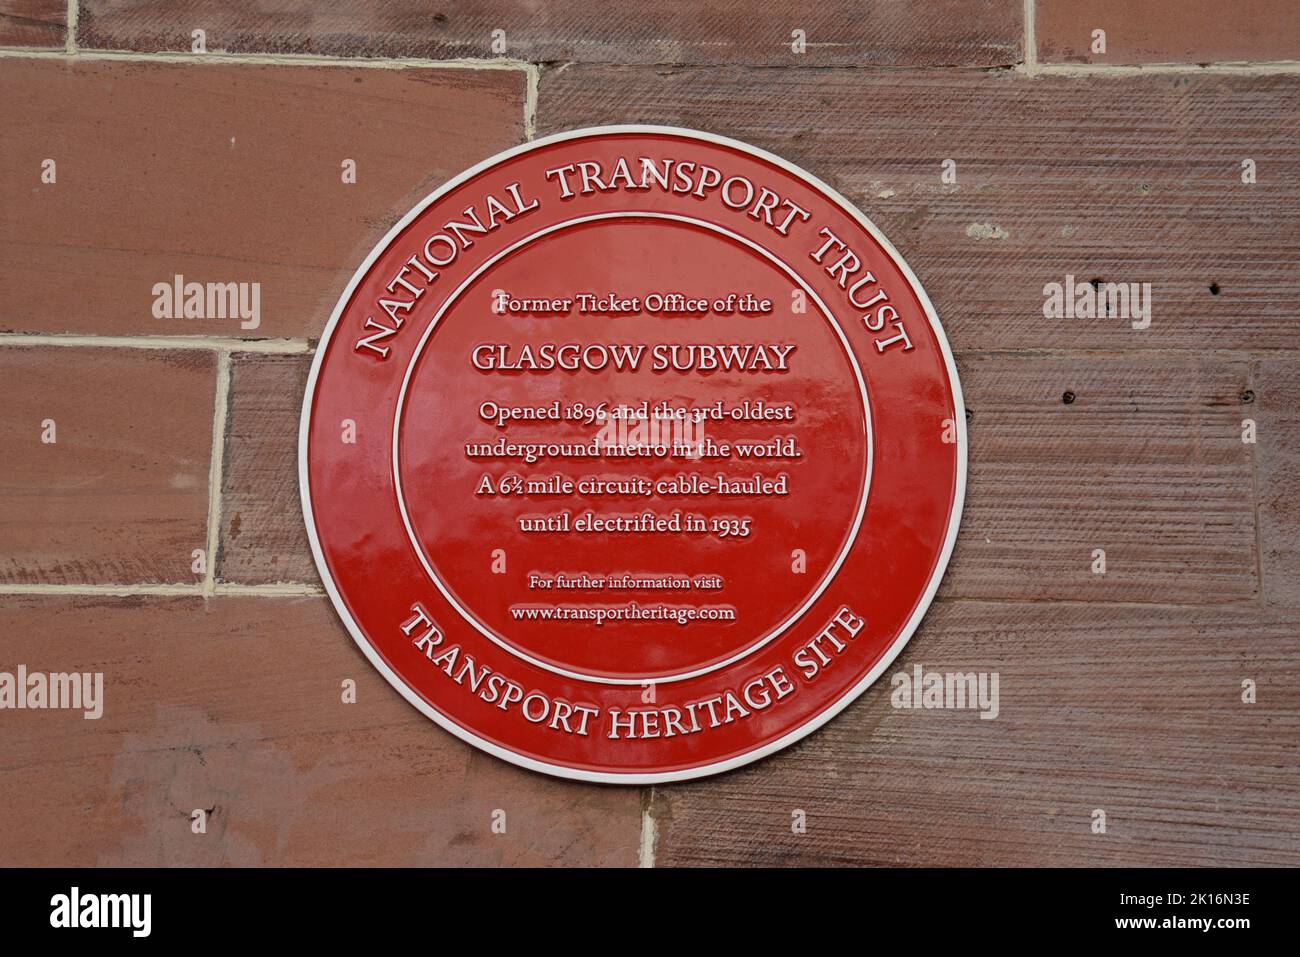 Une plaque rouge marquant le site de l'ancienne billetterie du métro de Glasgow, la place St Enochs, aujourd'hui café Nero. Août 2022 Banque D'Images